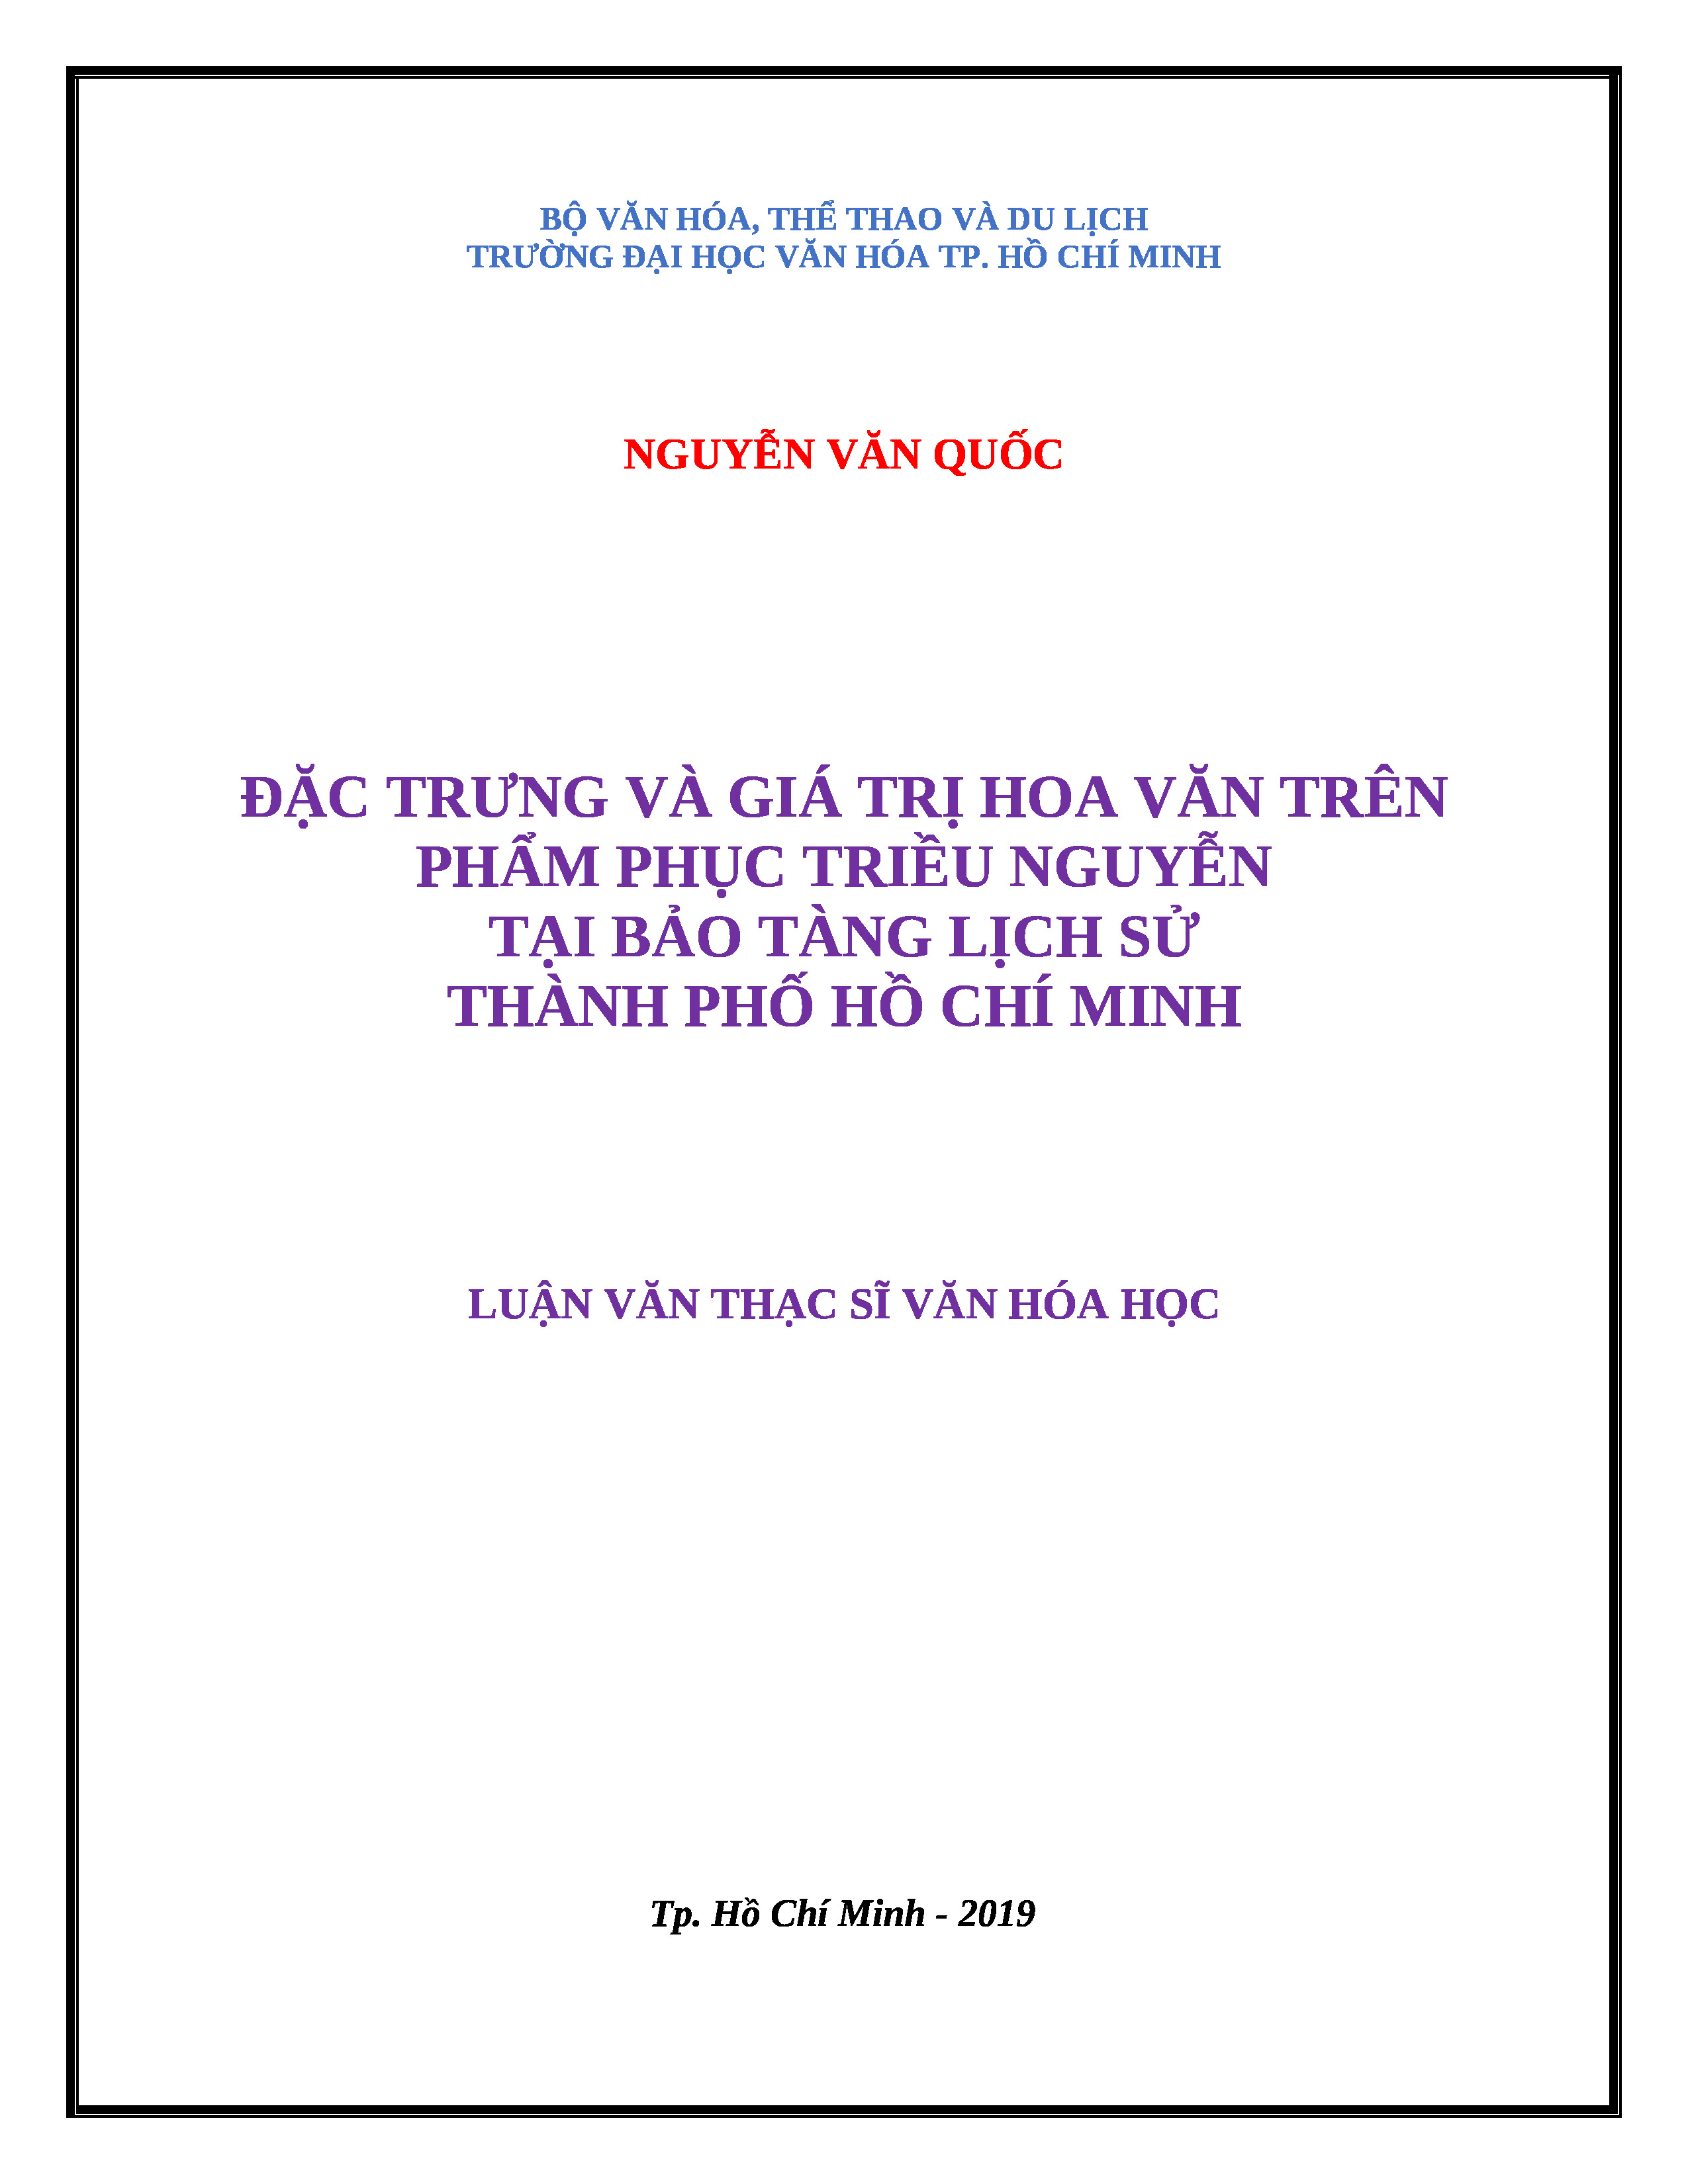 Đặc trưng và giá trị hoa văn trên phẩm phục triều Nguyễn tại Bảo tàng lịch sử Thành phố Hồ Chí Minh